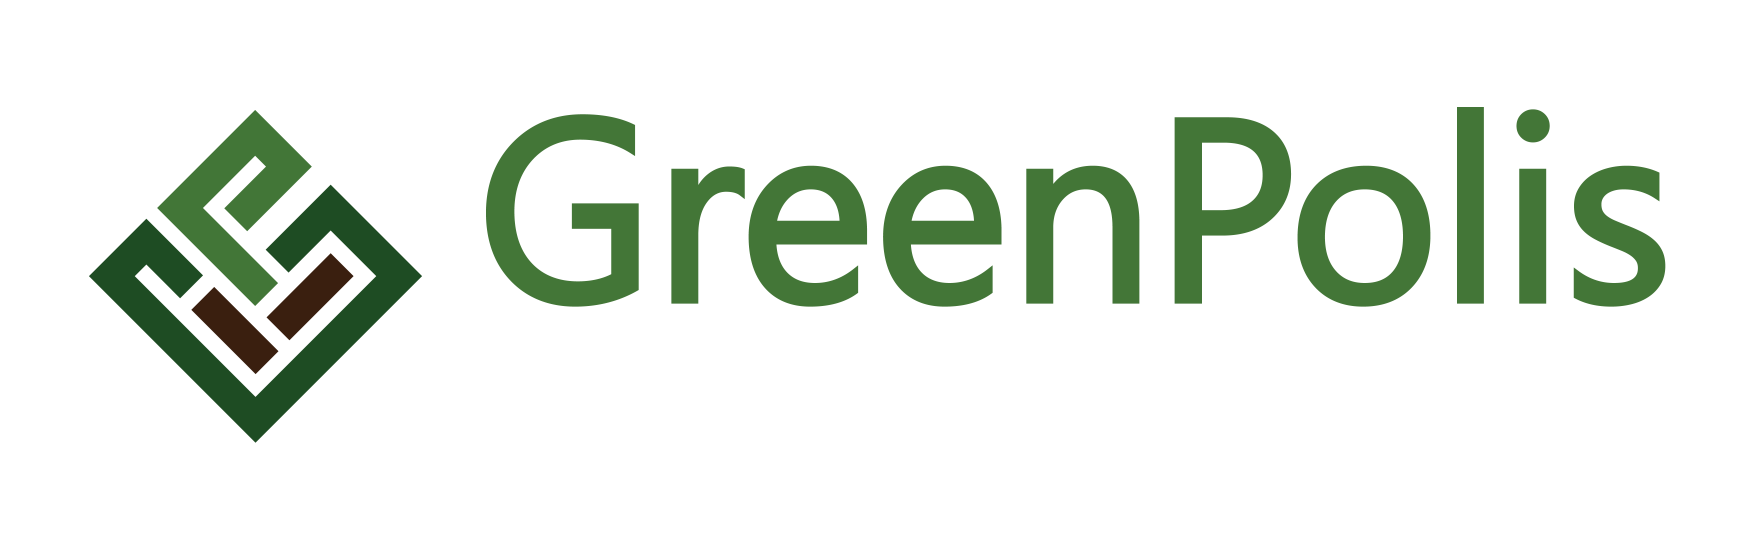 GreenPolis - Usługi ogrodnicze Wrocław